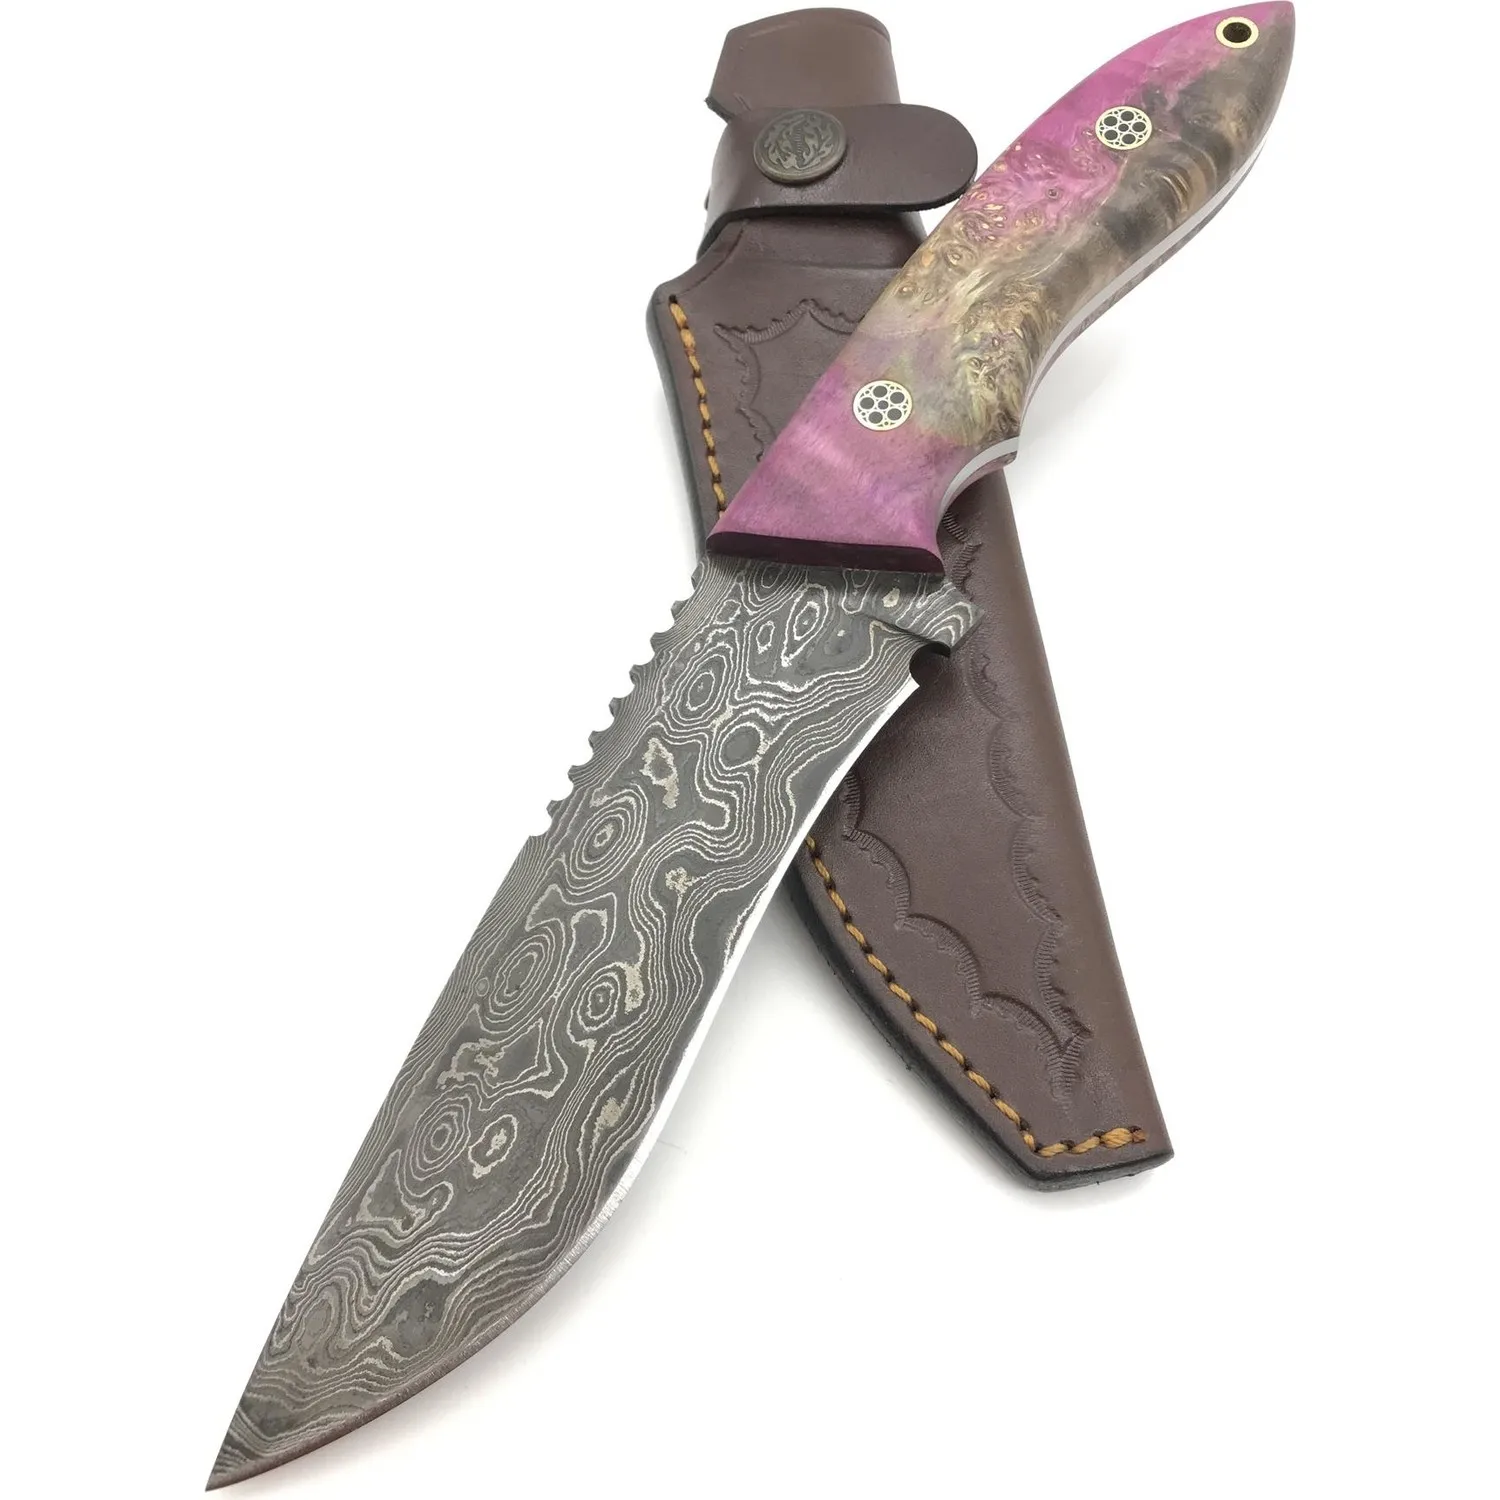 

Дамасский туристический нож ручной работы